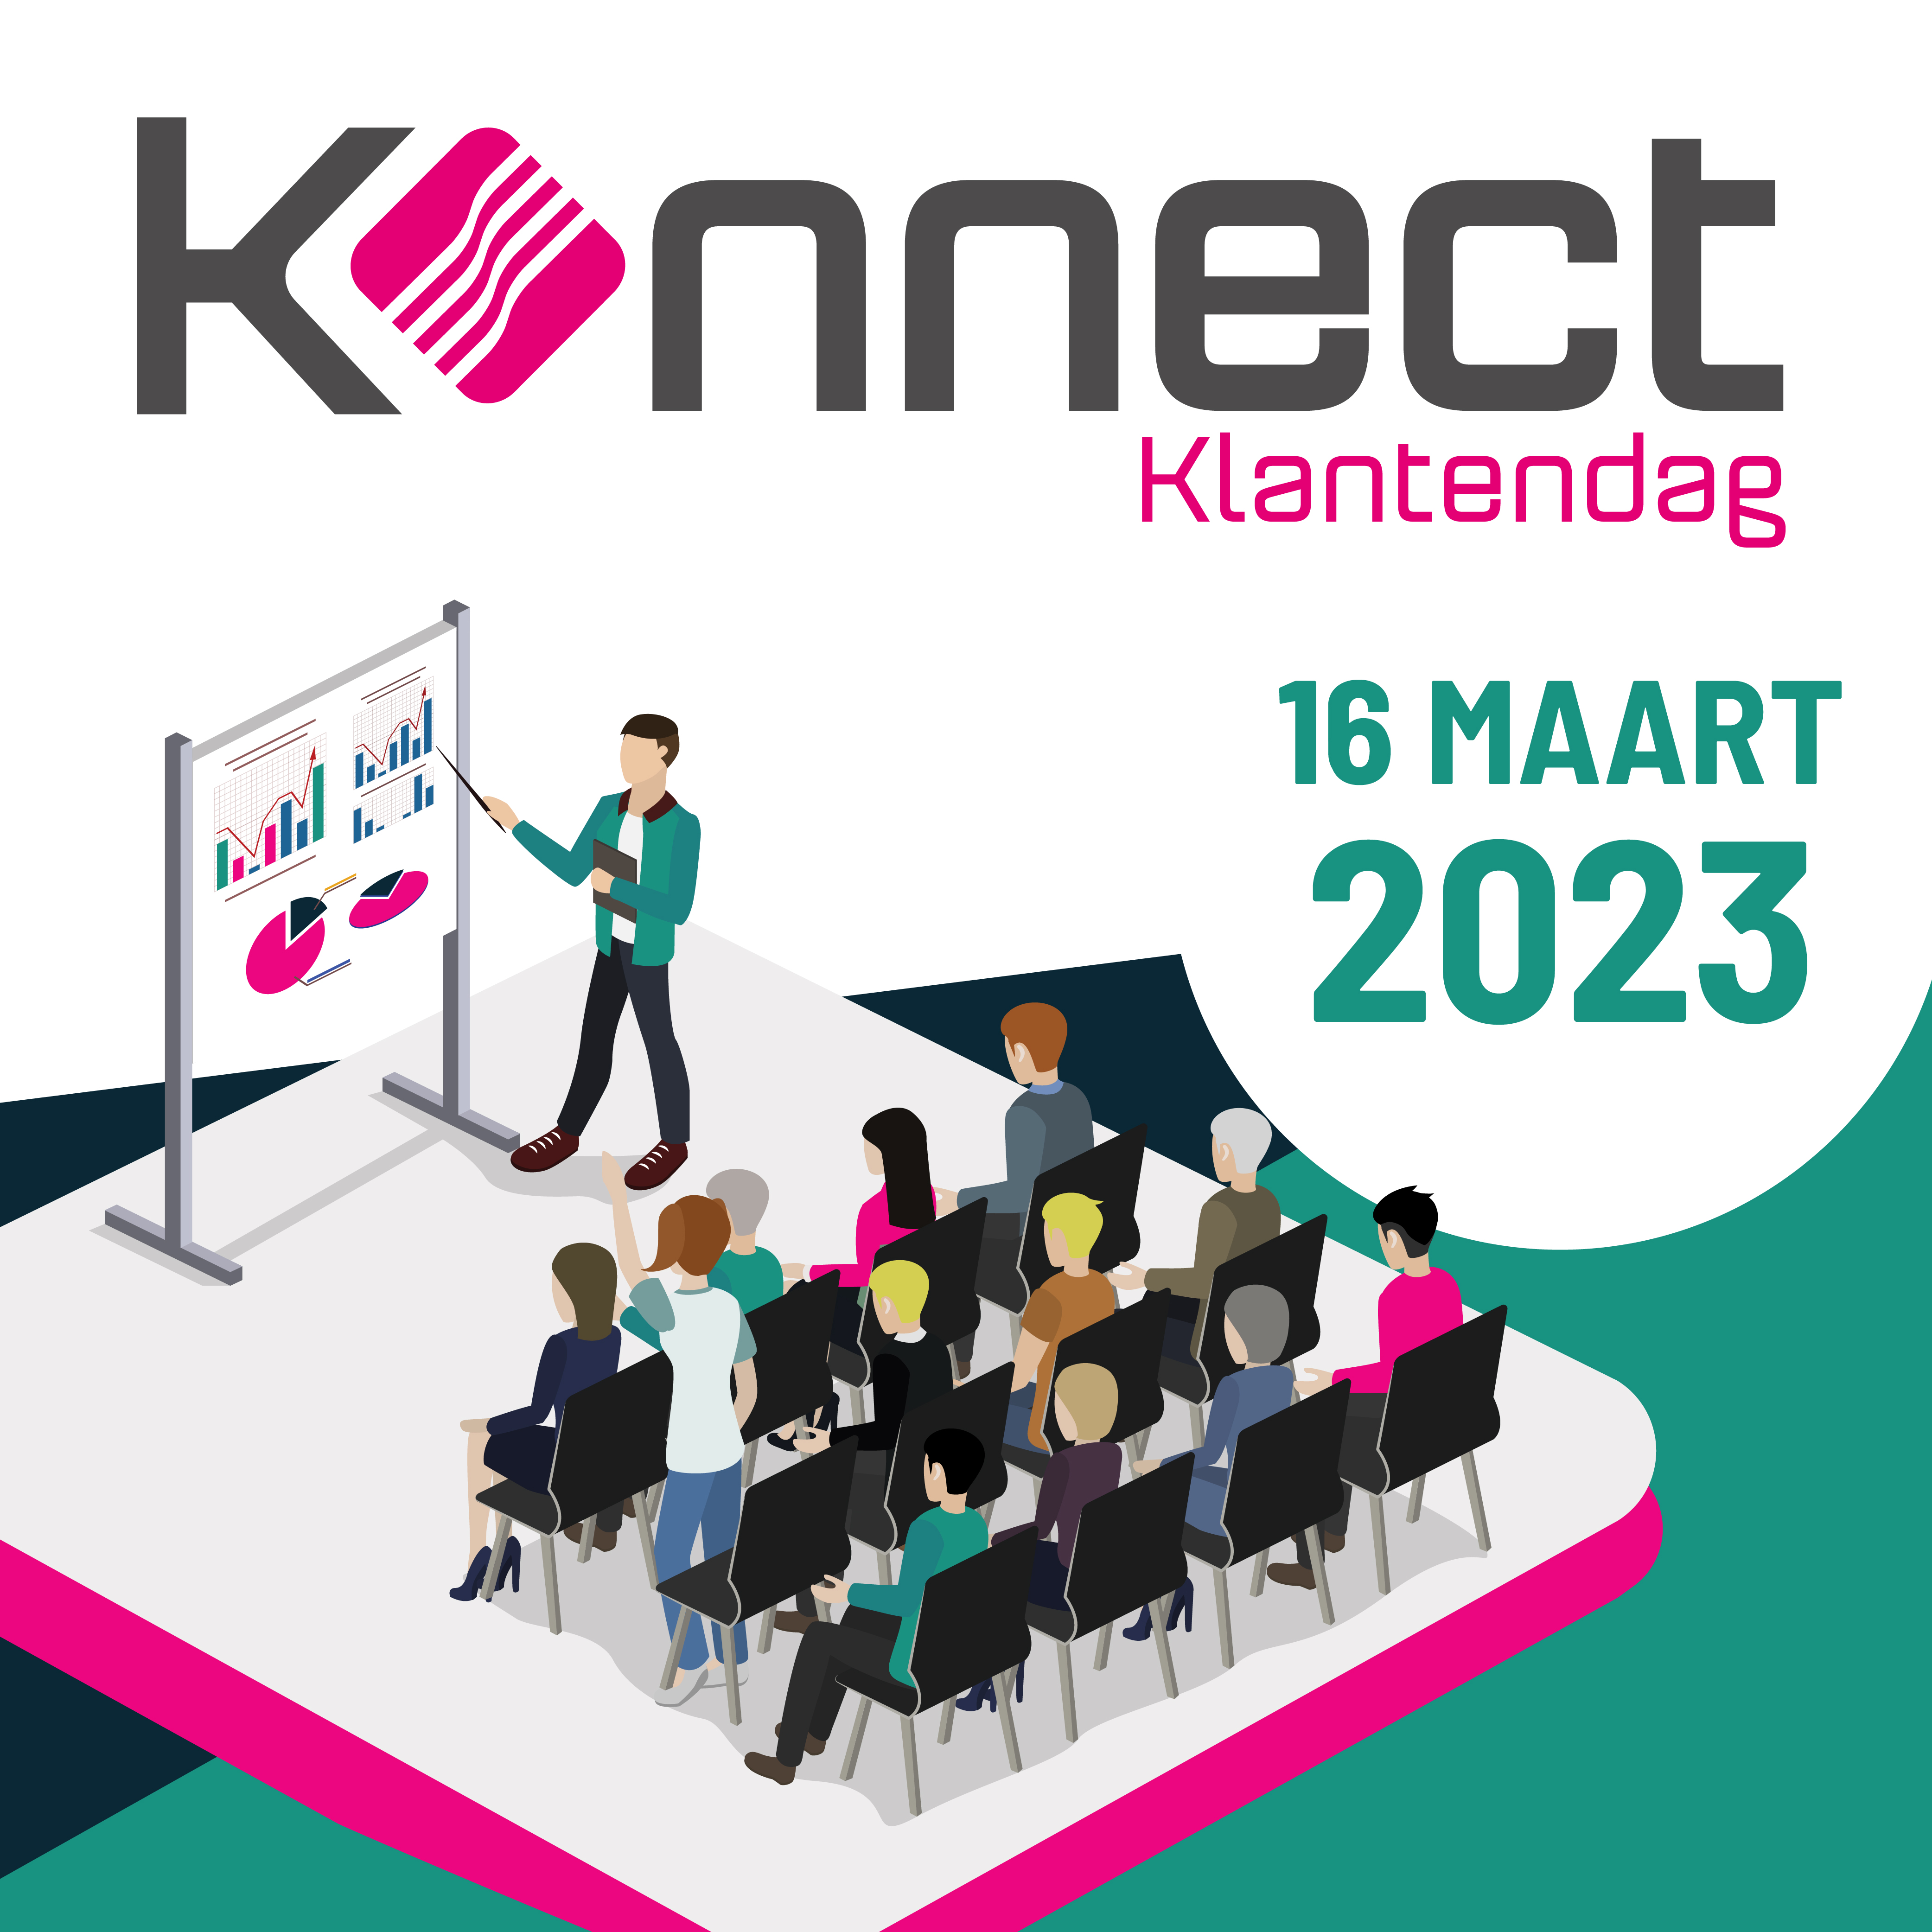 Konnect Klantendag - 16 Maart 2023